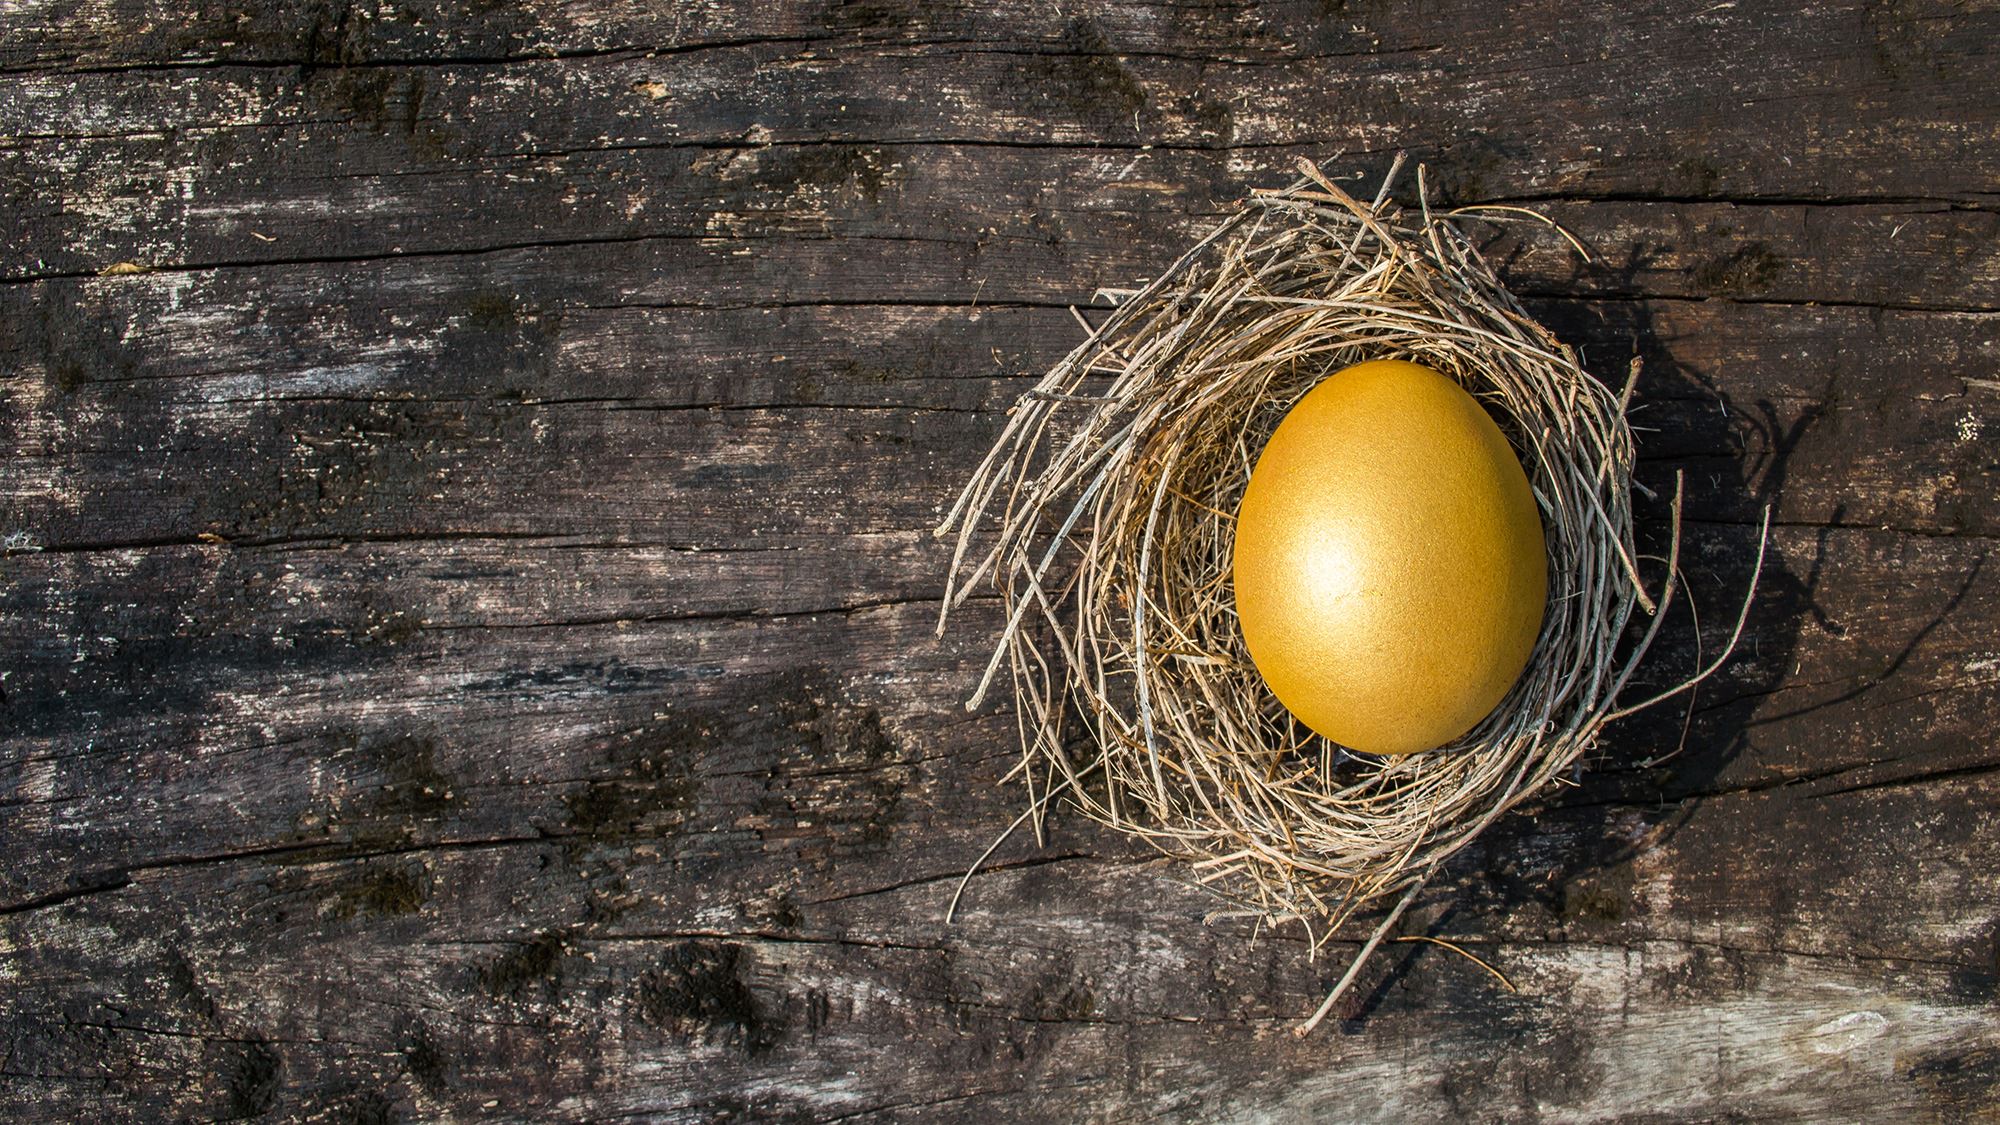 The Golden Nest Egg